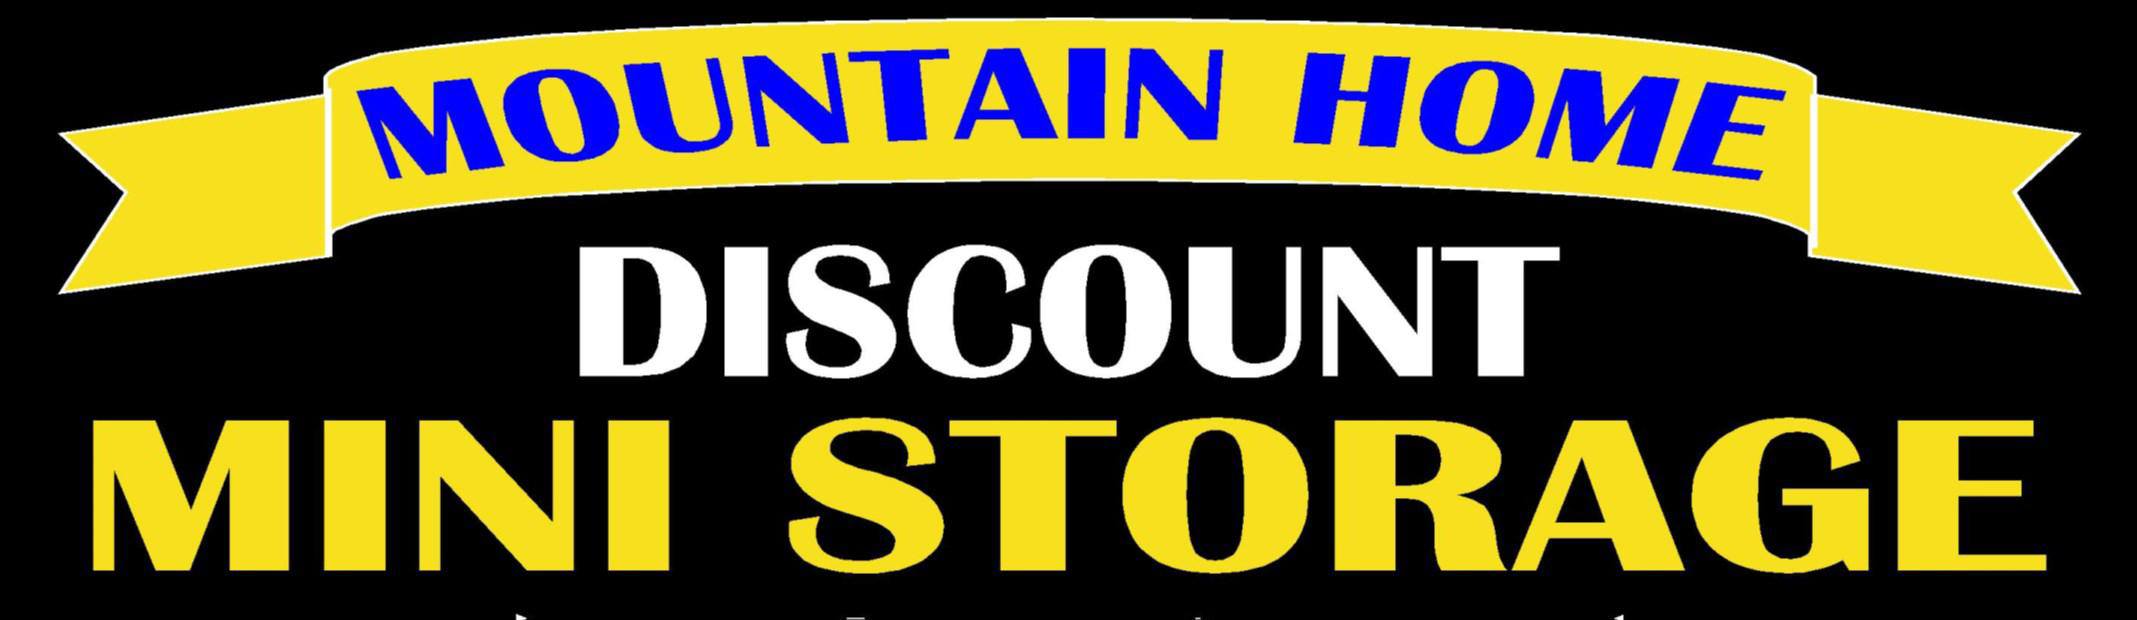 Mountain Home Discount Mini Storage